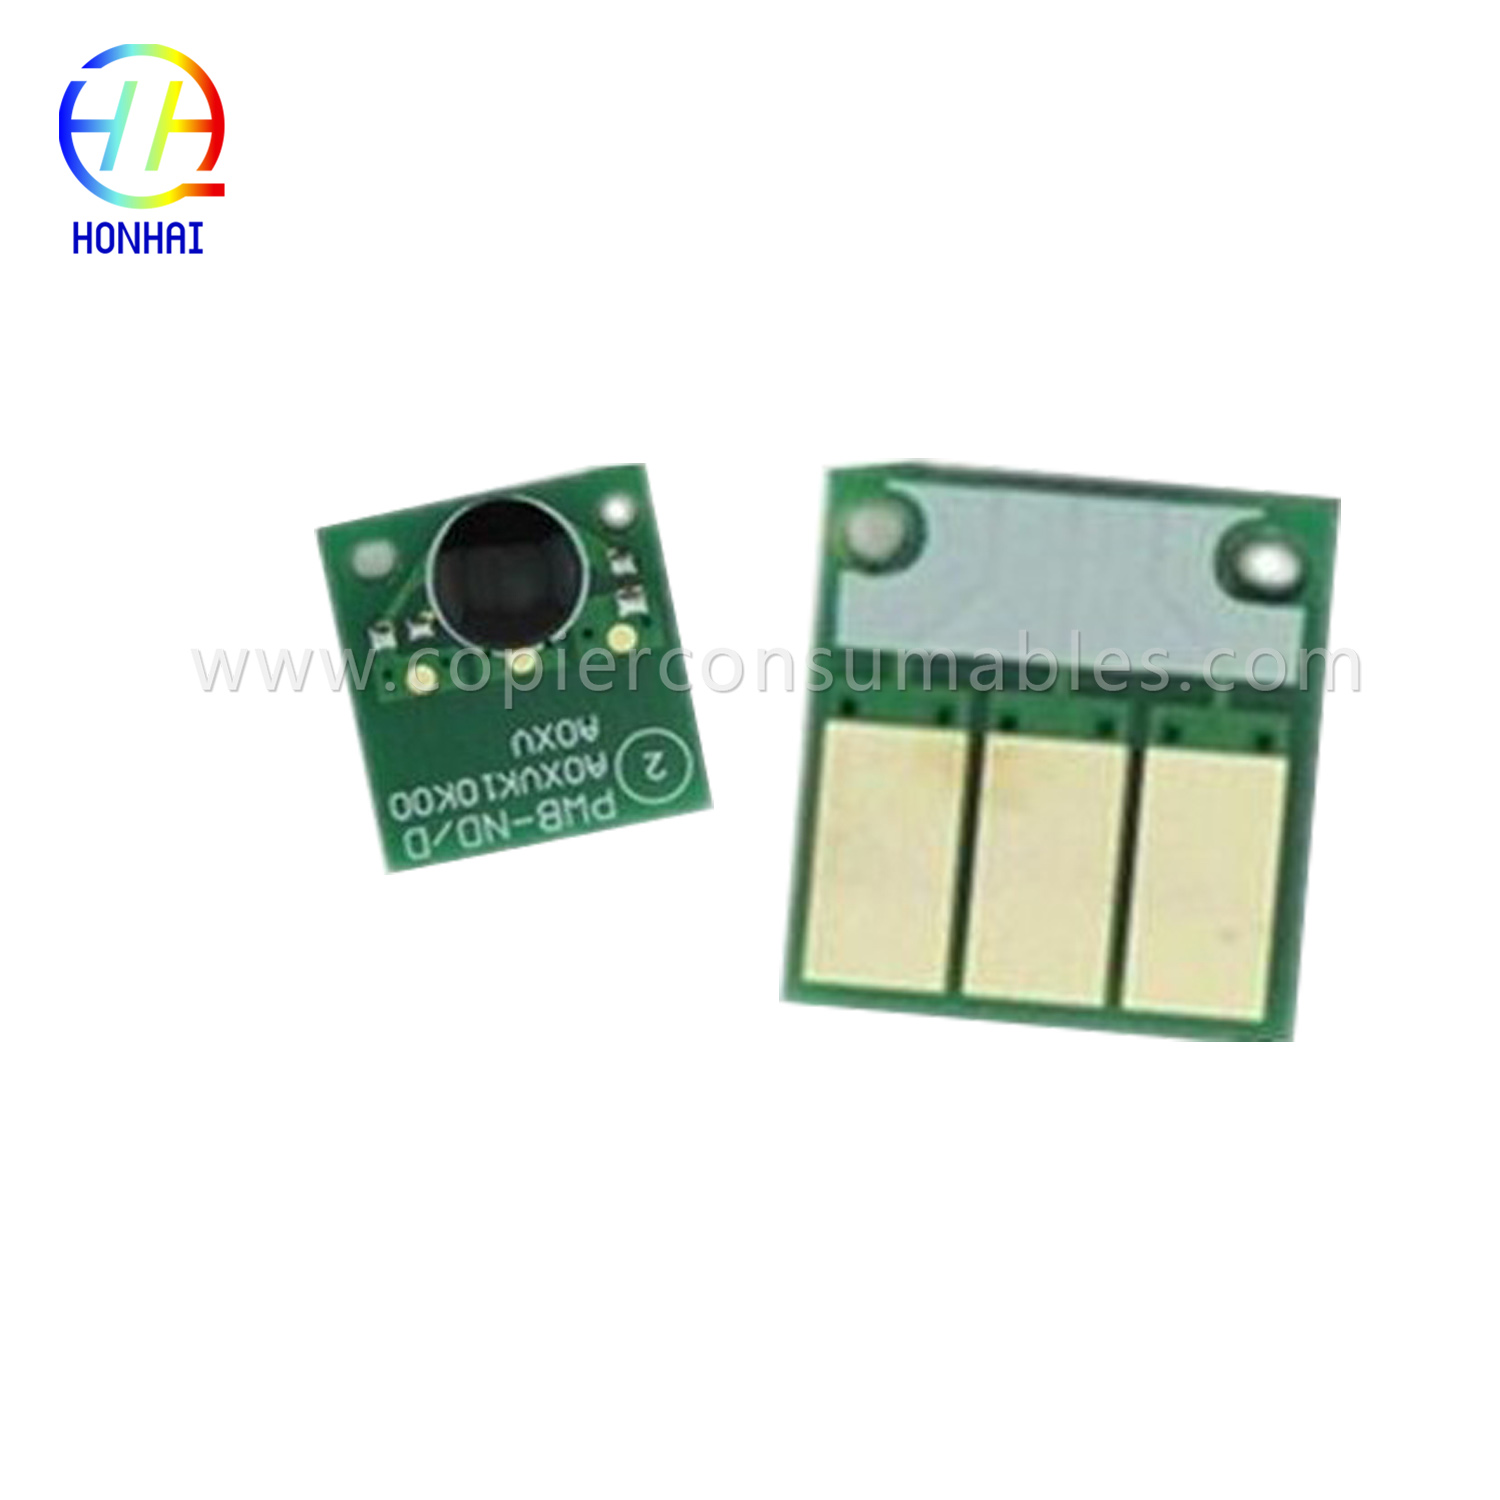 Toner cartridge Chip for Konica Minolta C220 C280 C360.jpg-1 拷贝